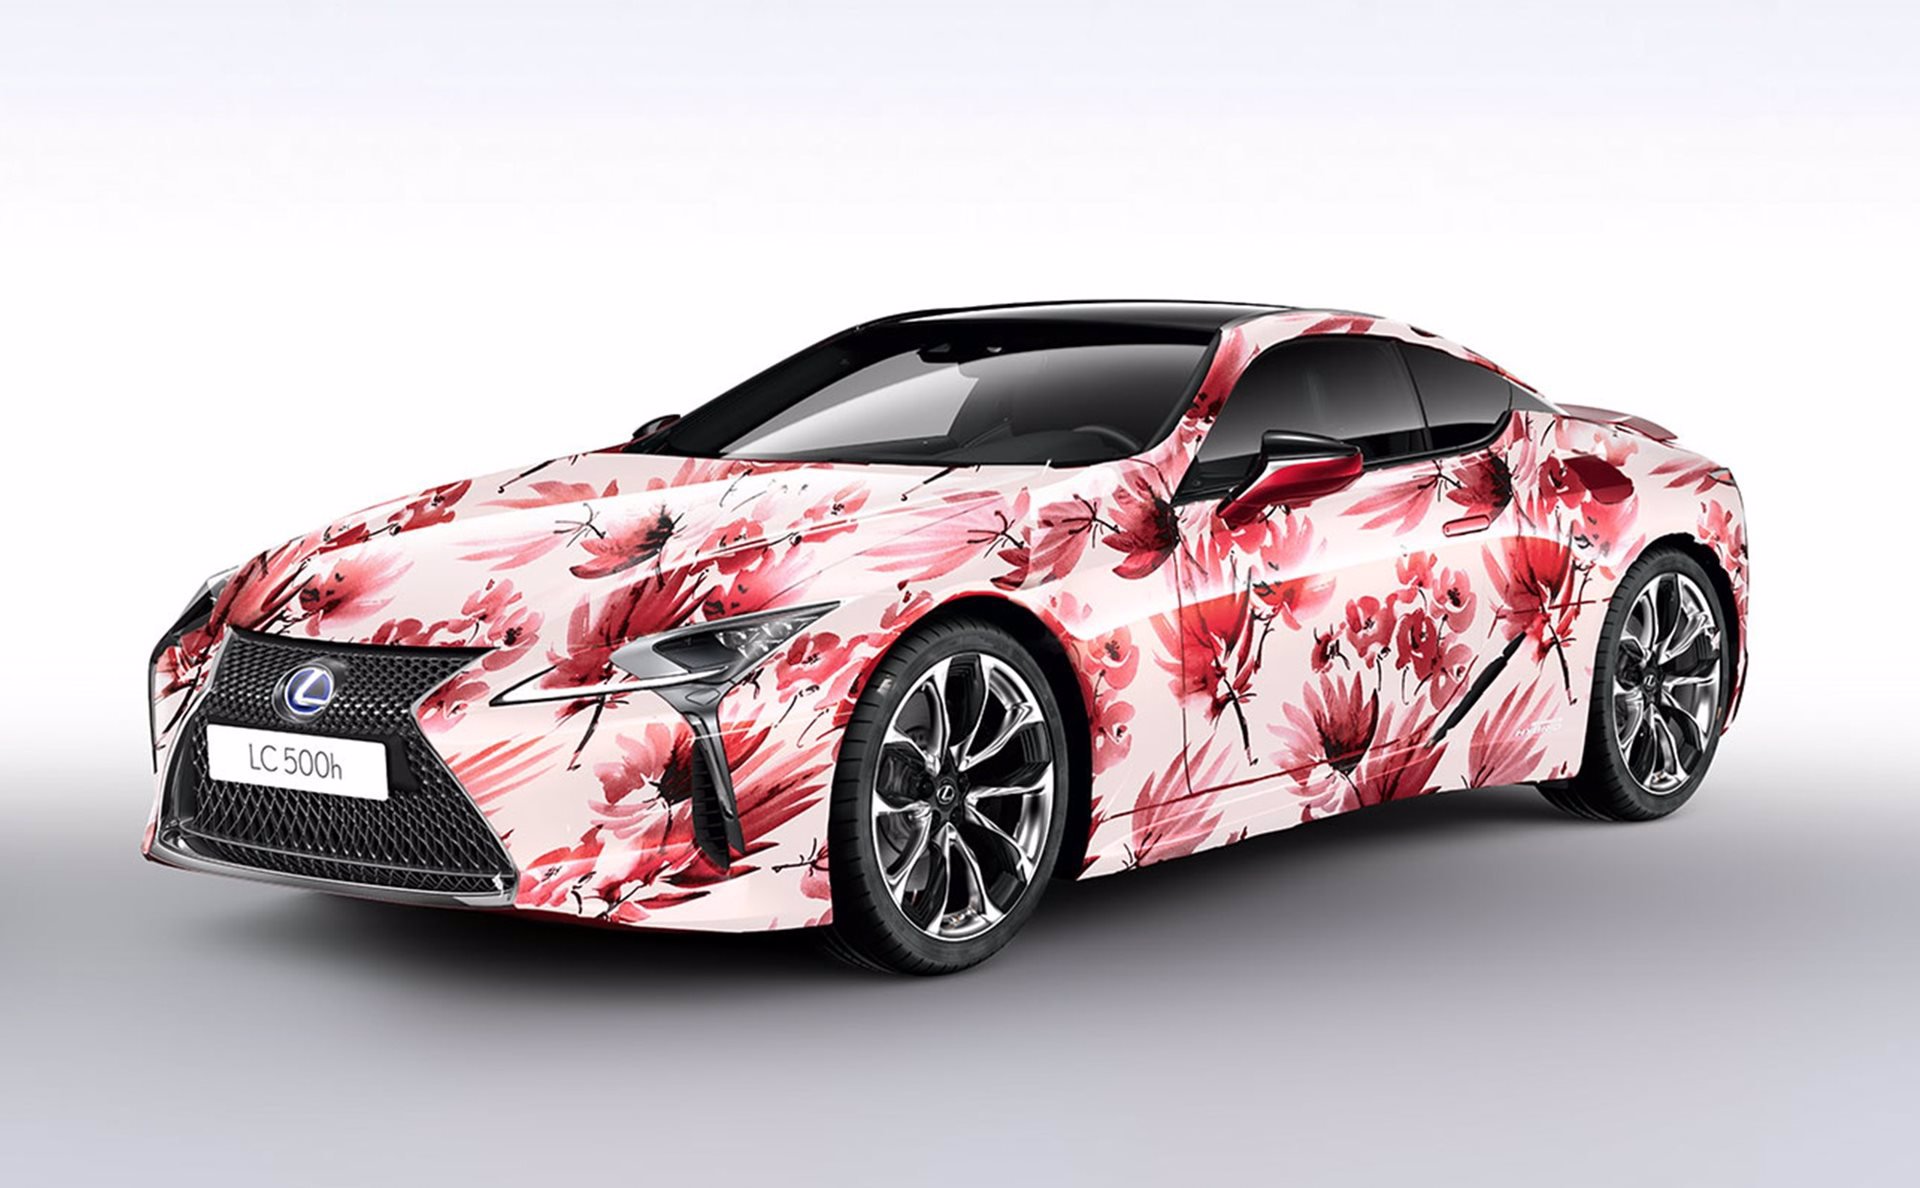 LEXUS LC500h Art Car inspirado en las flores japonesas y en los trazos de acuarela